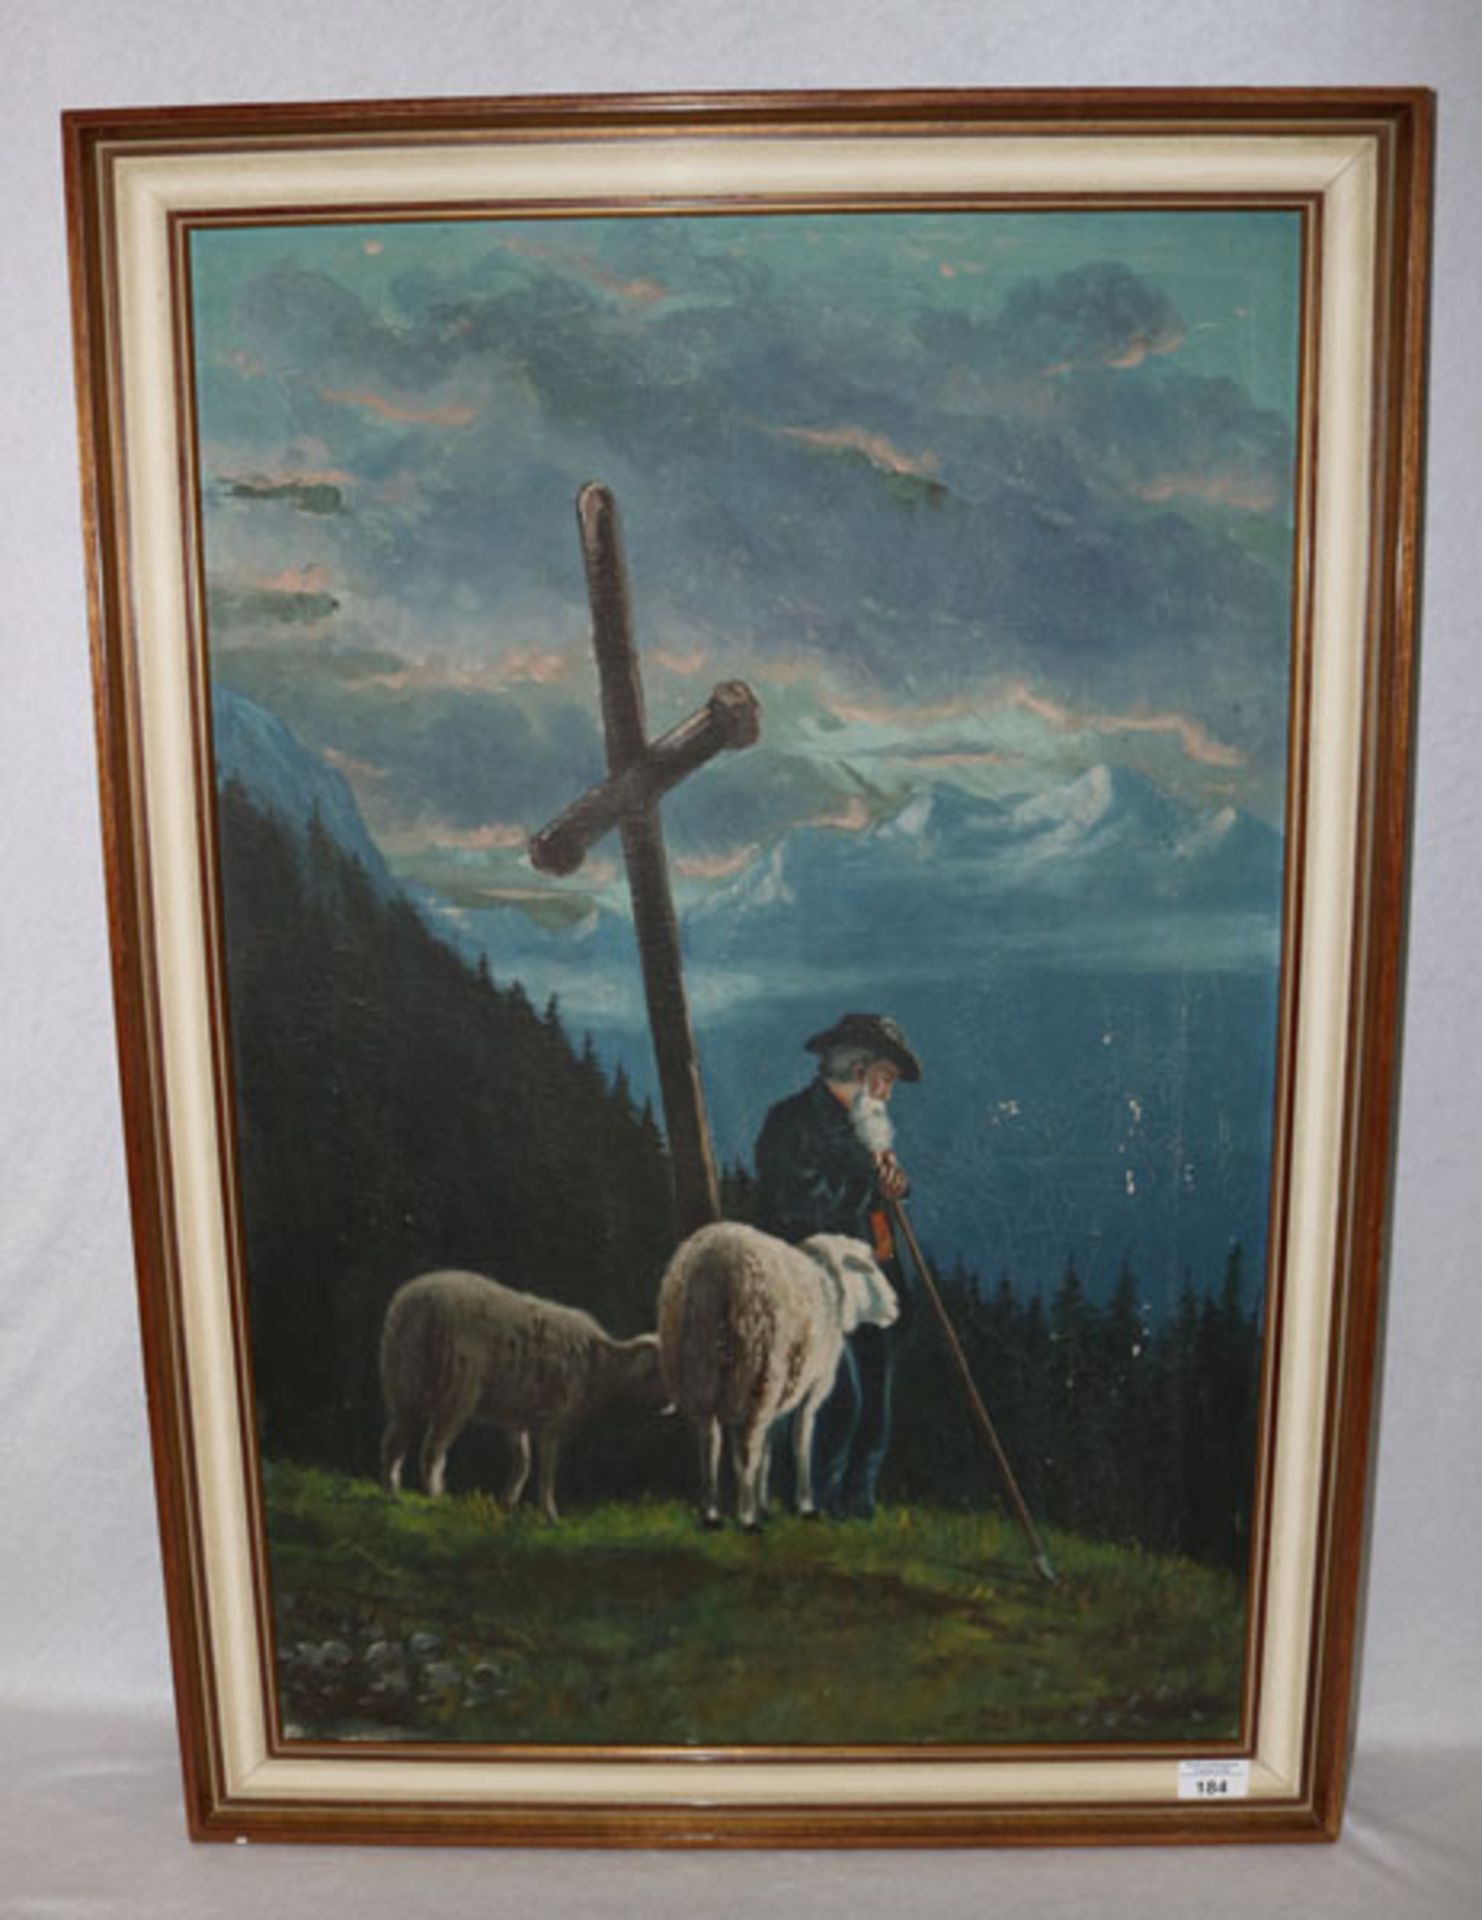 Gemälde ÖL/LW 'Schäfer mit Schafen an Bergkreuz', undeutlich signiert, gerahmt, Rahmen bestossen,